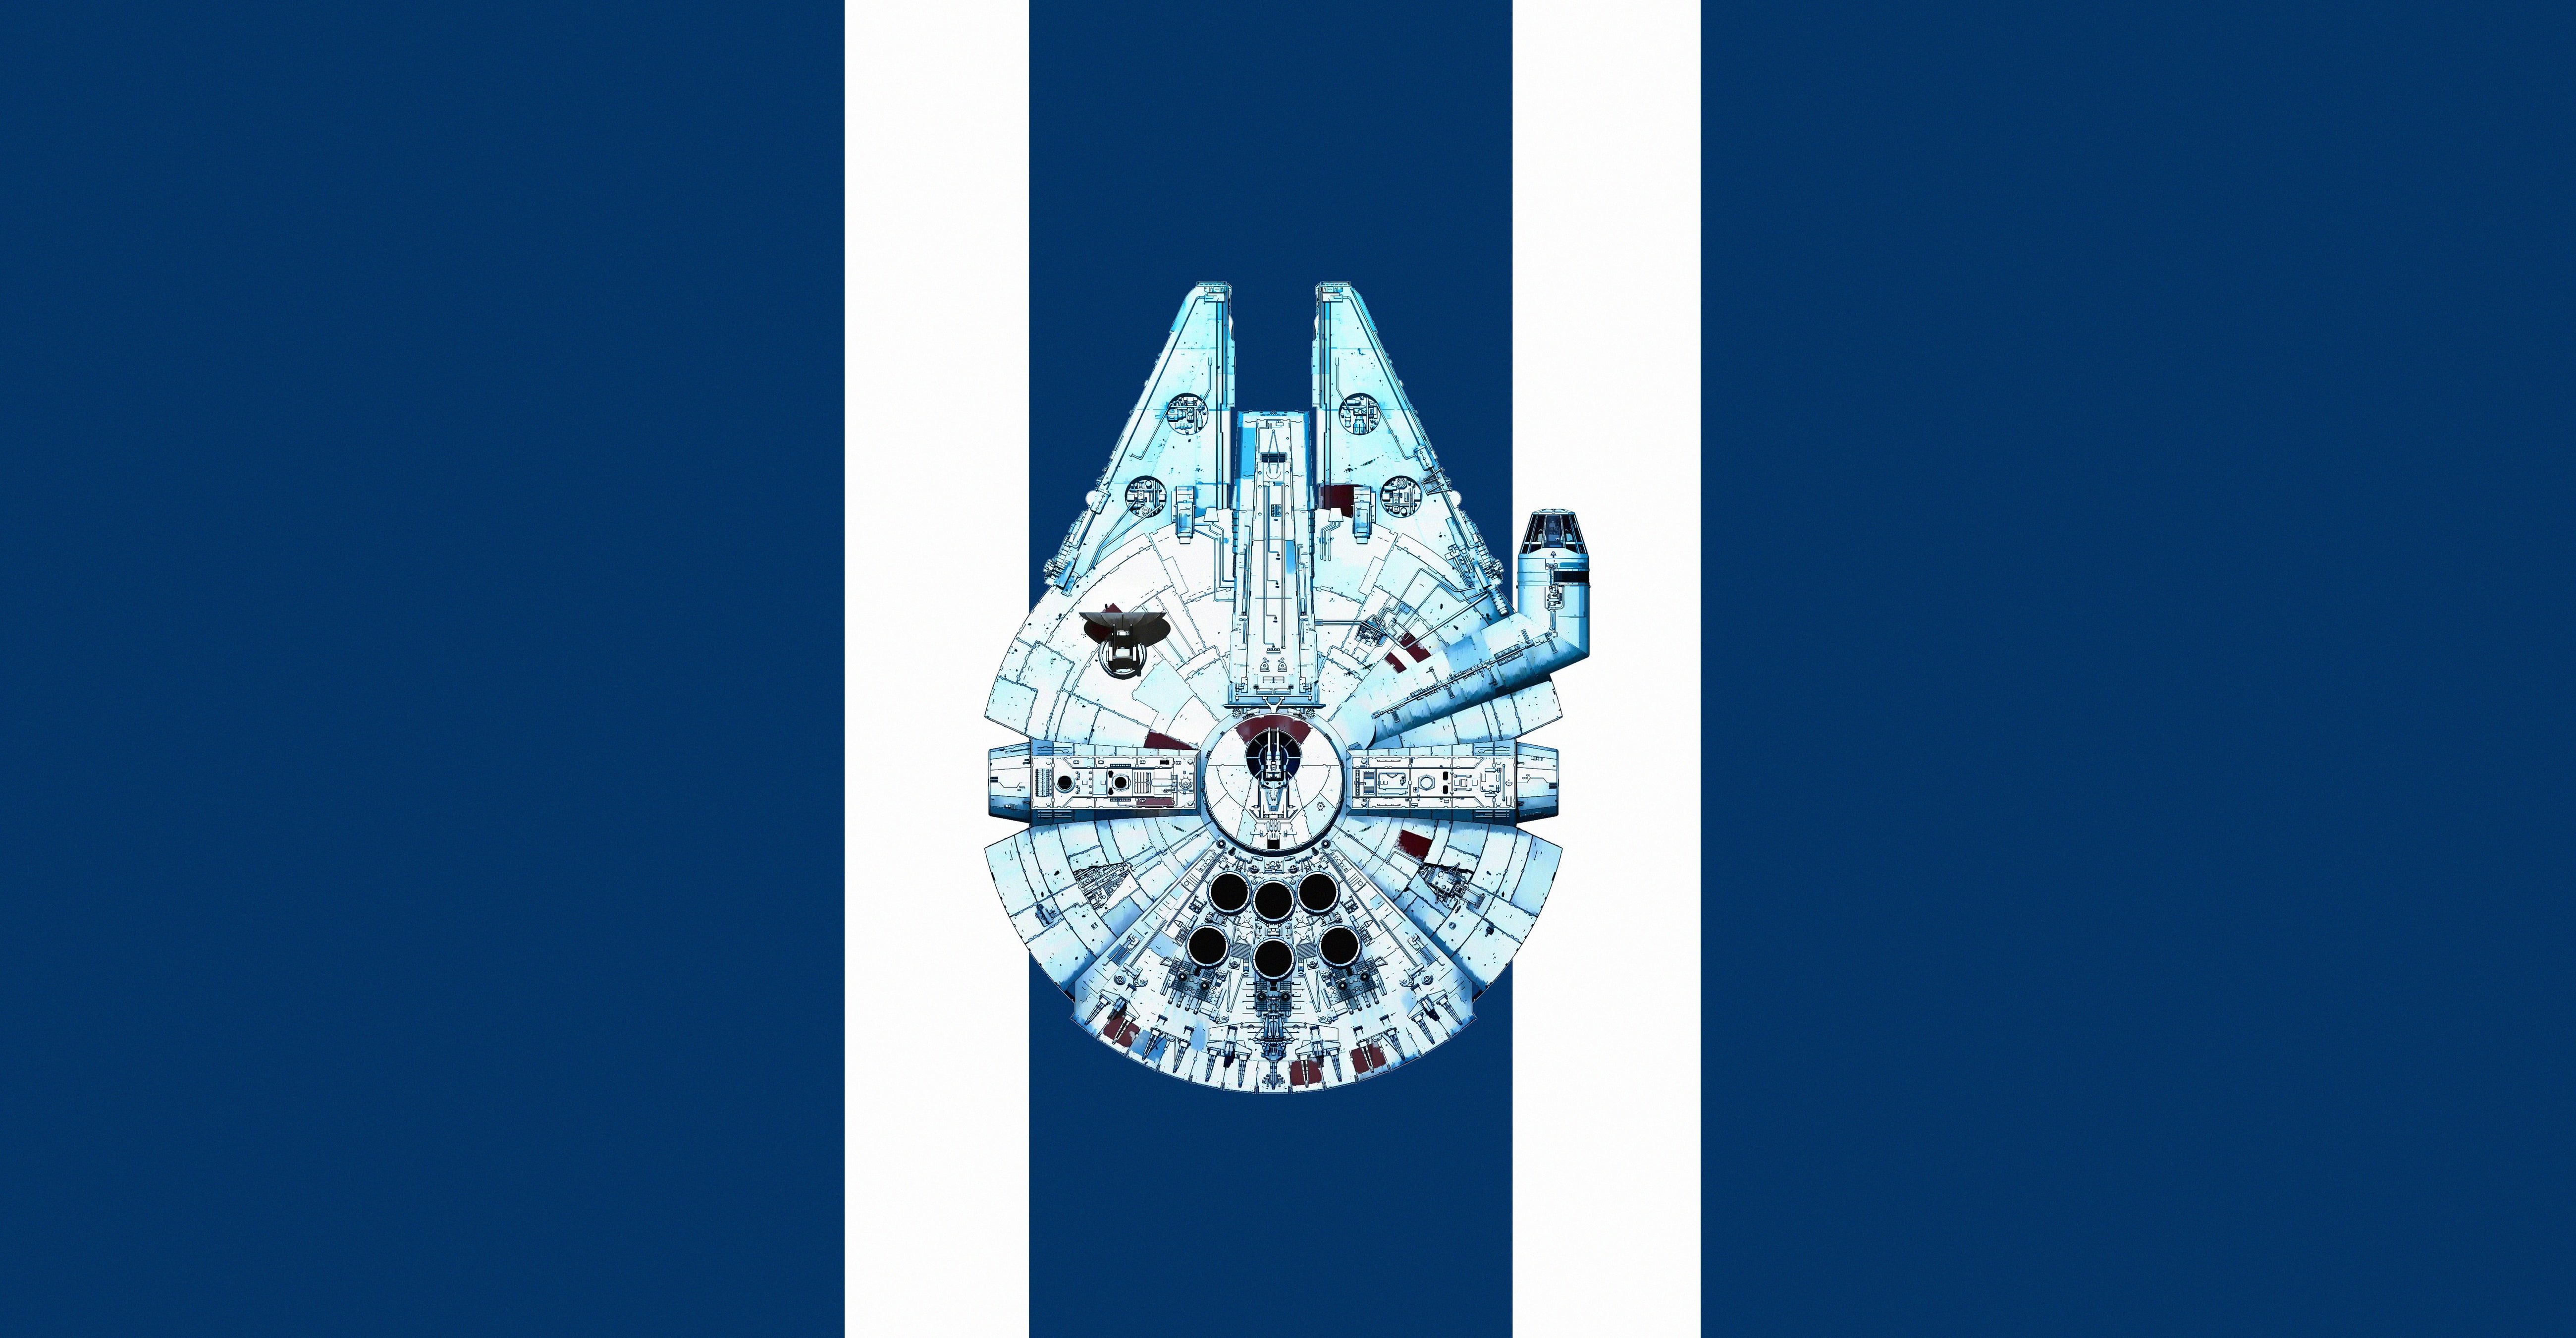 Star Wars, Millennium Falcon, Minimalist, Spaceship